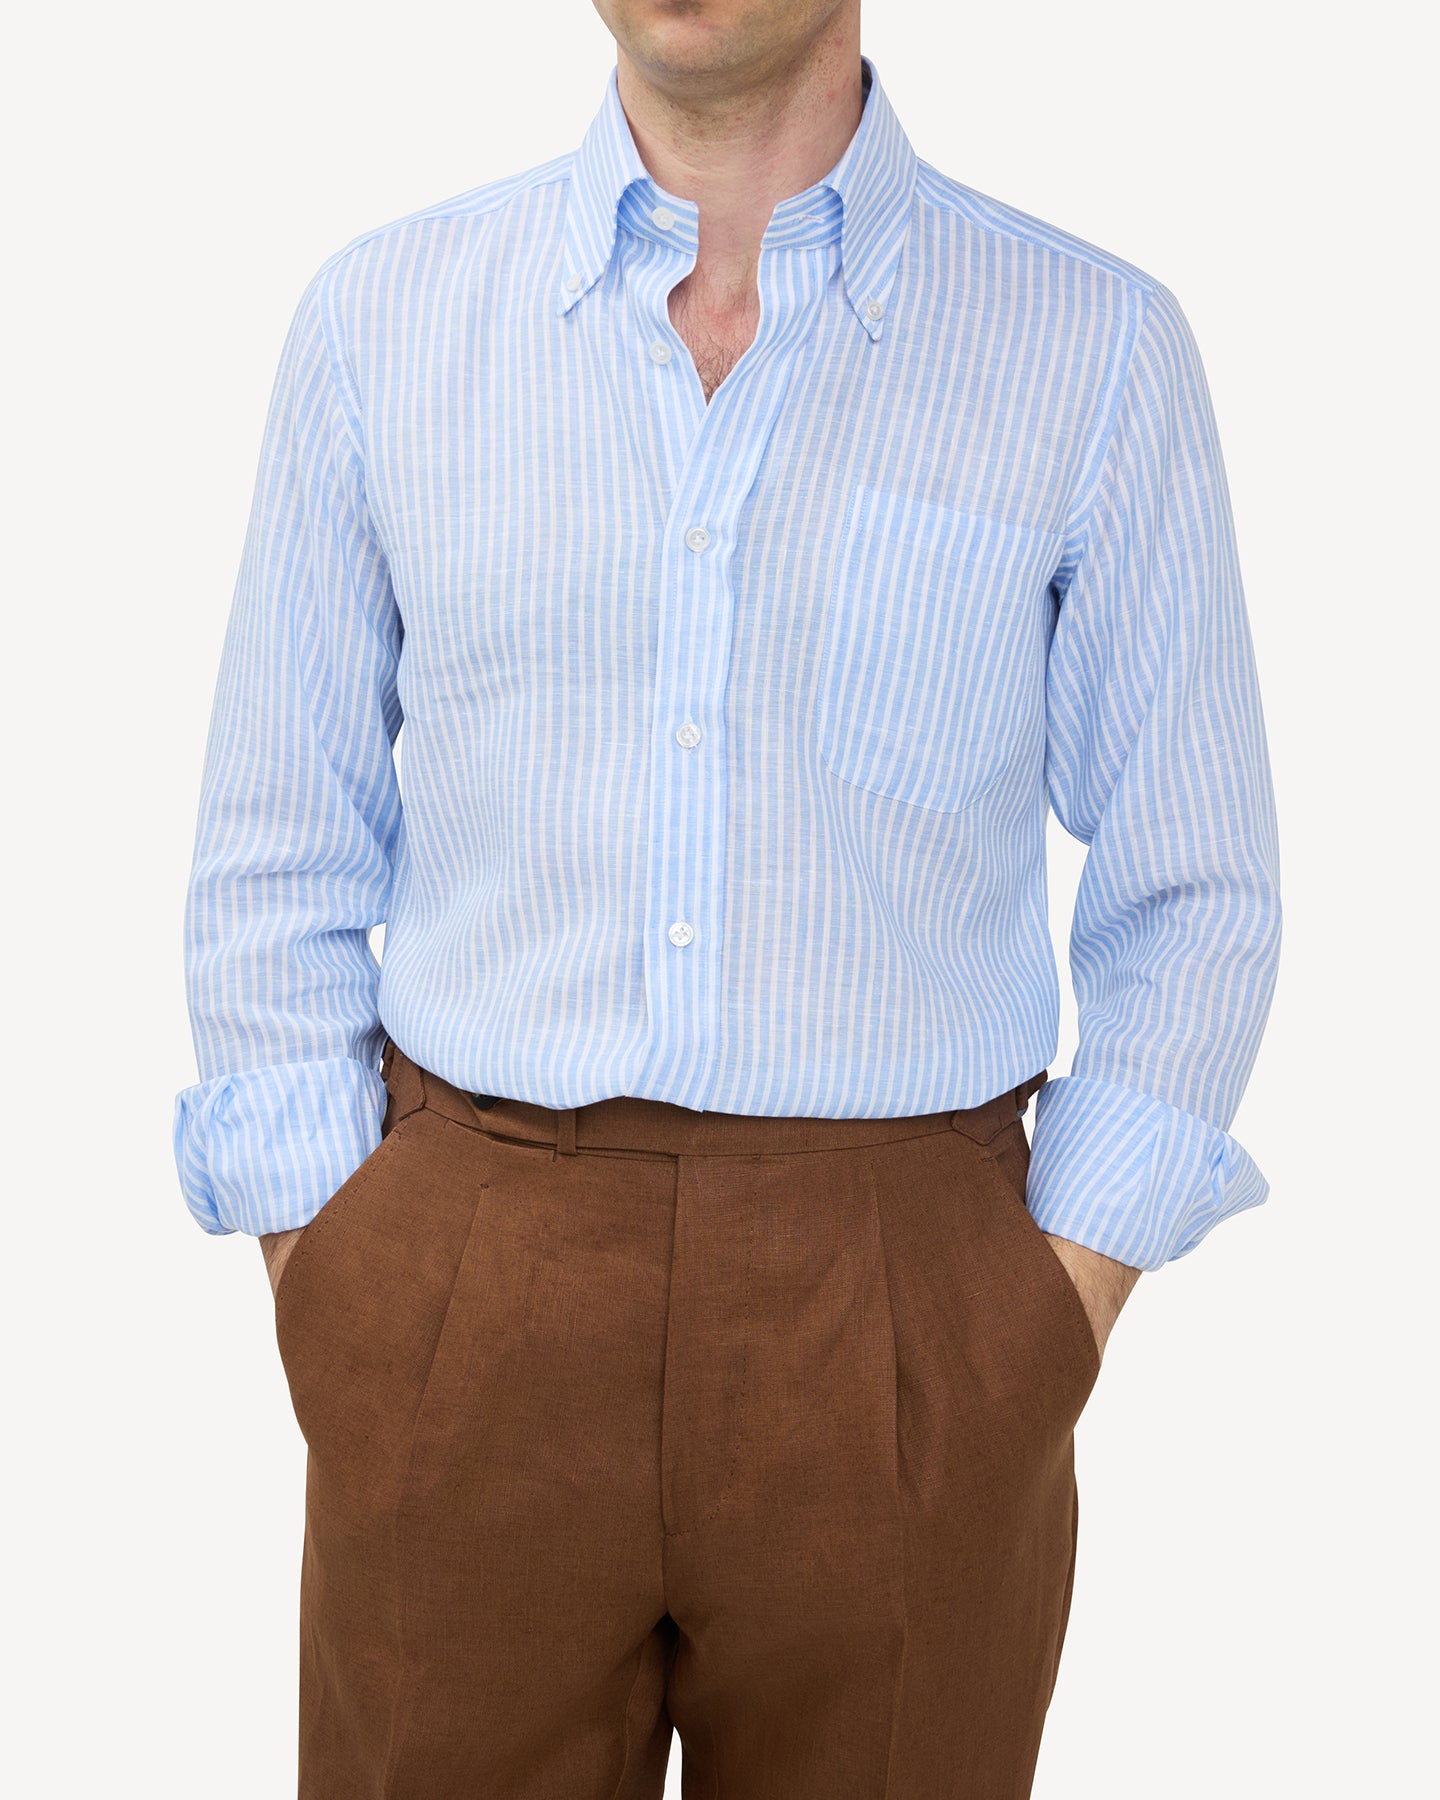 Man wearing light blue reverse stripe linen shirt and dark tan linen trousers